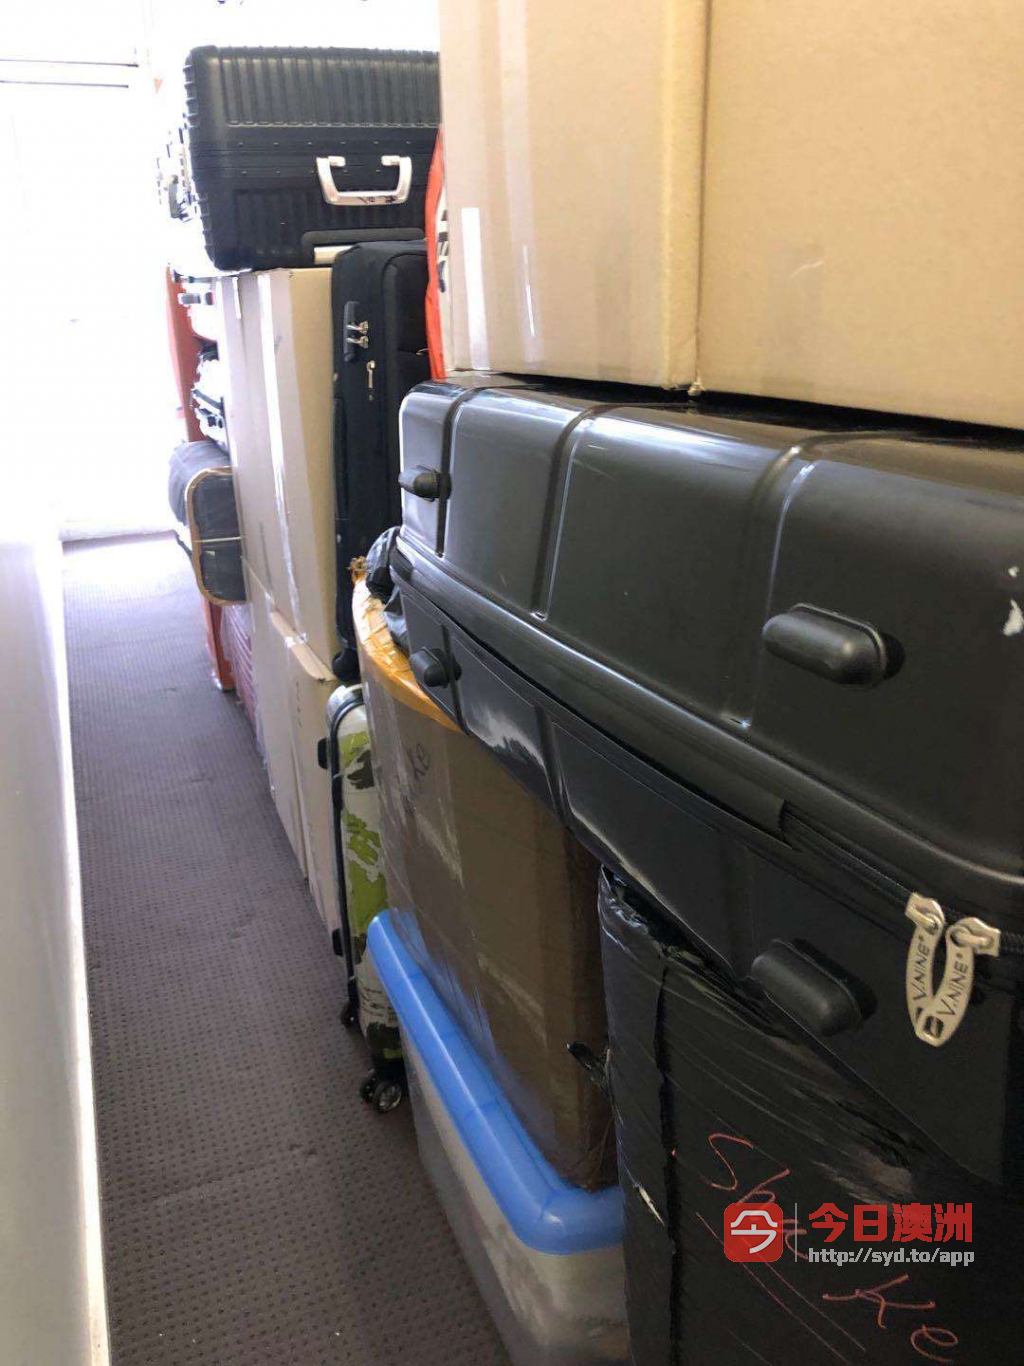  Kaijia行李寄存 搬家 退房清洁 花园打理 家具家电出售一条